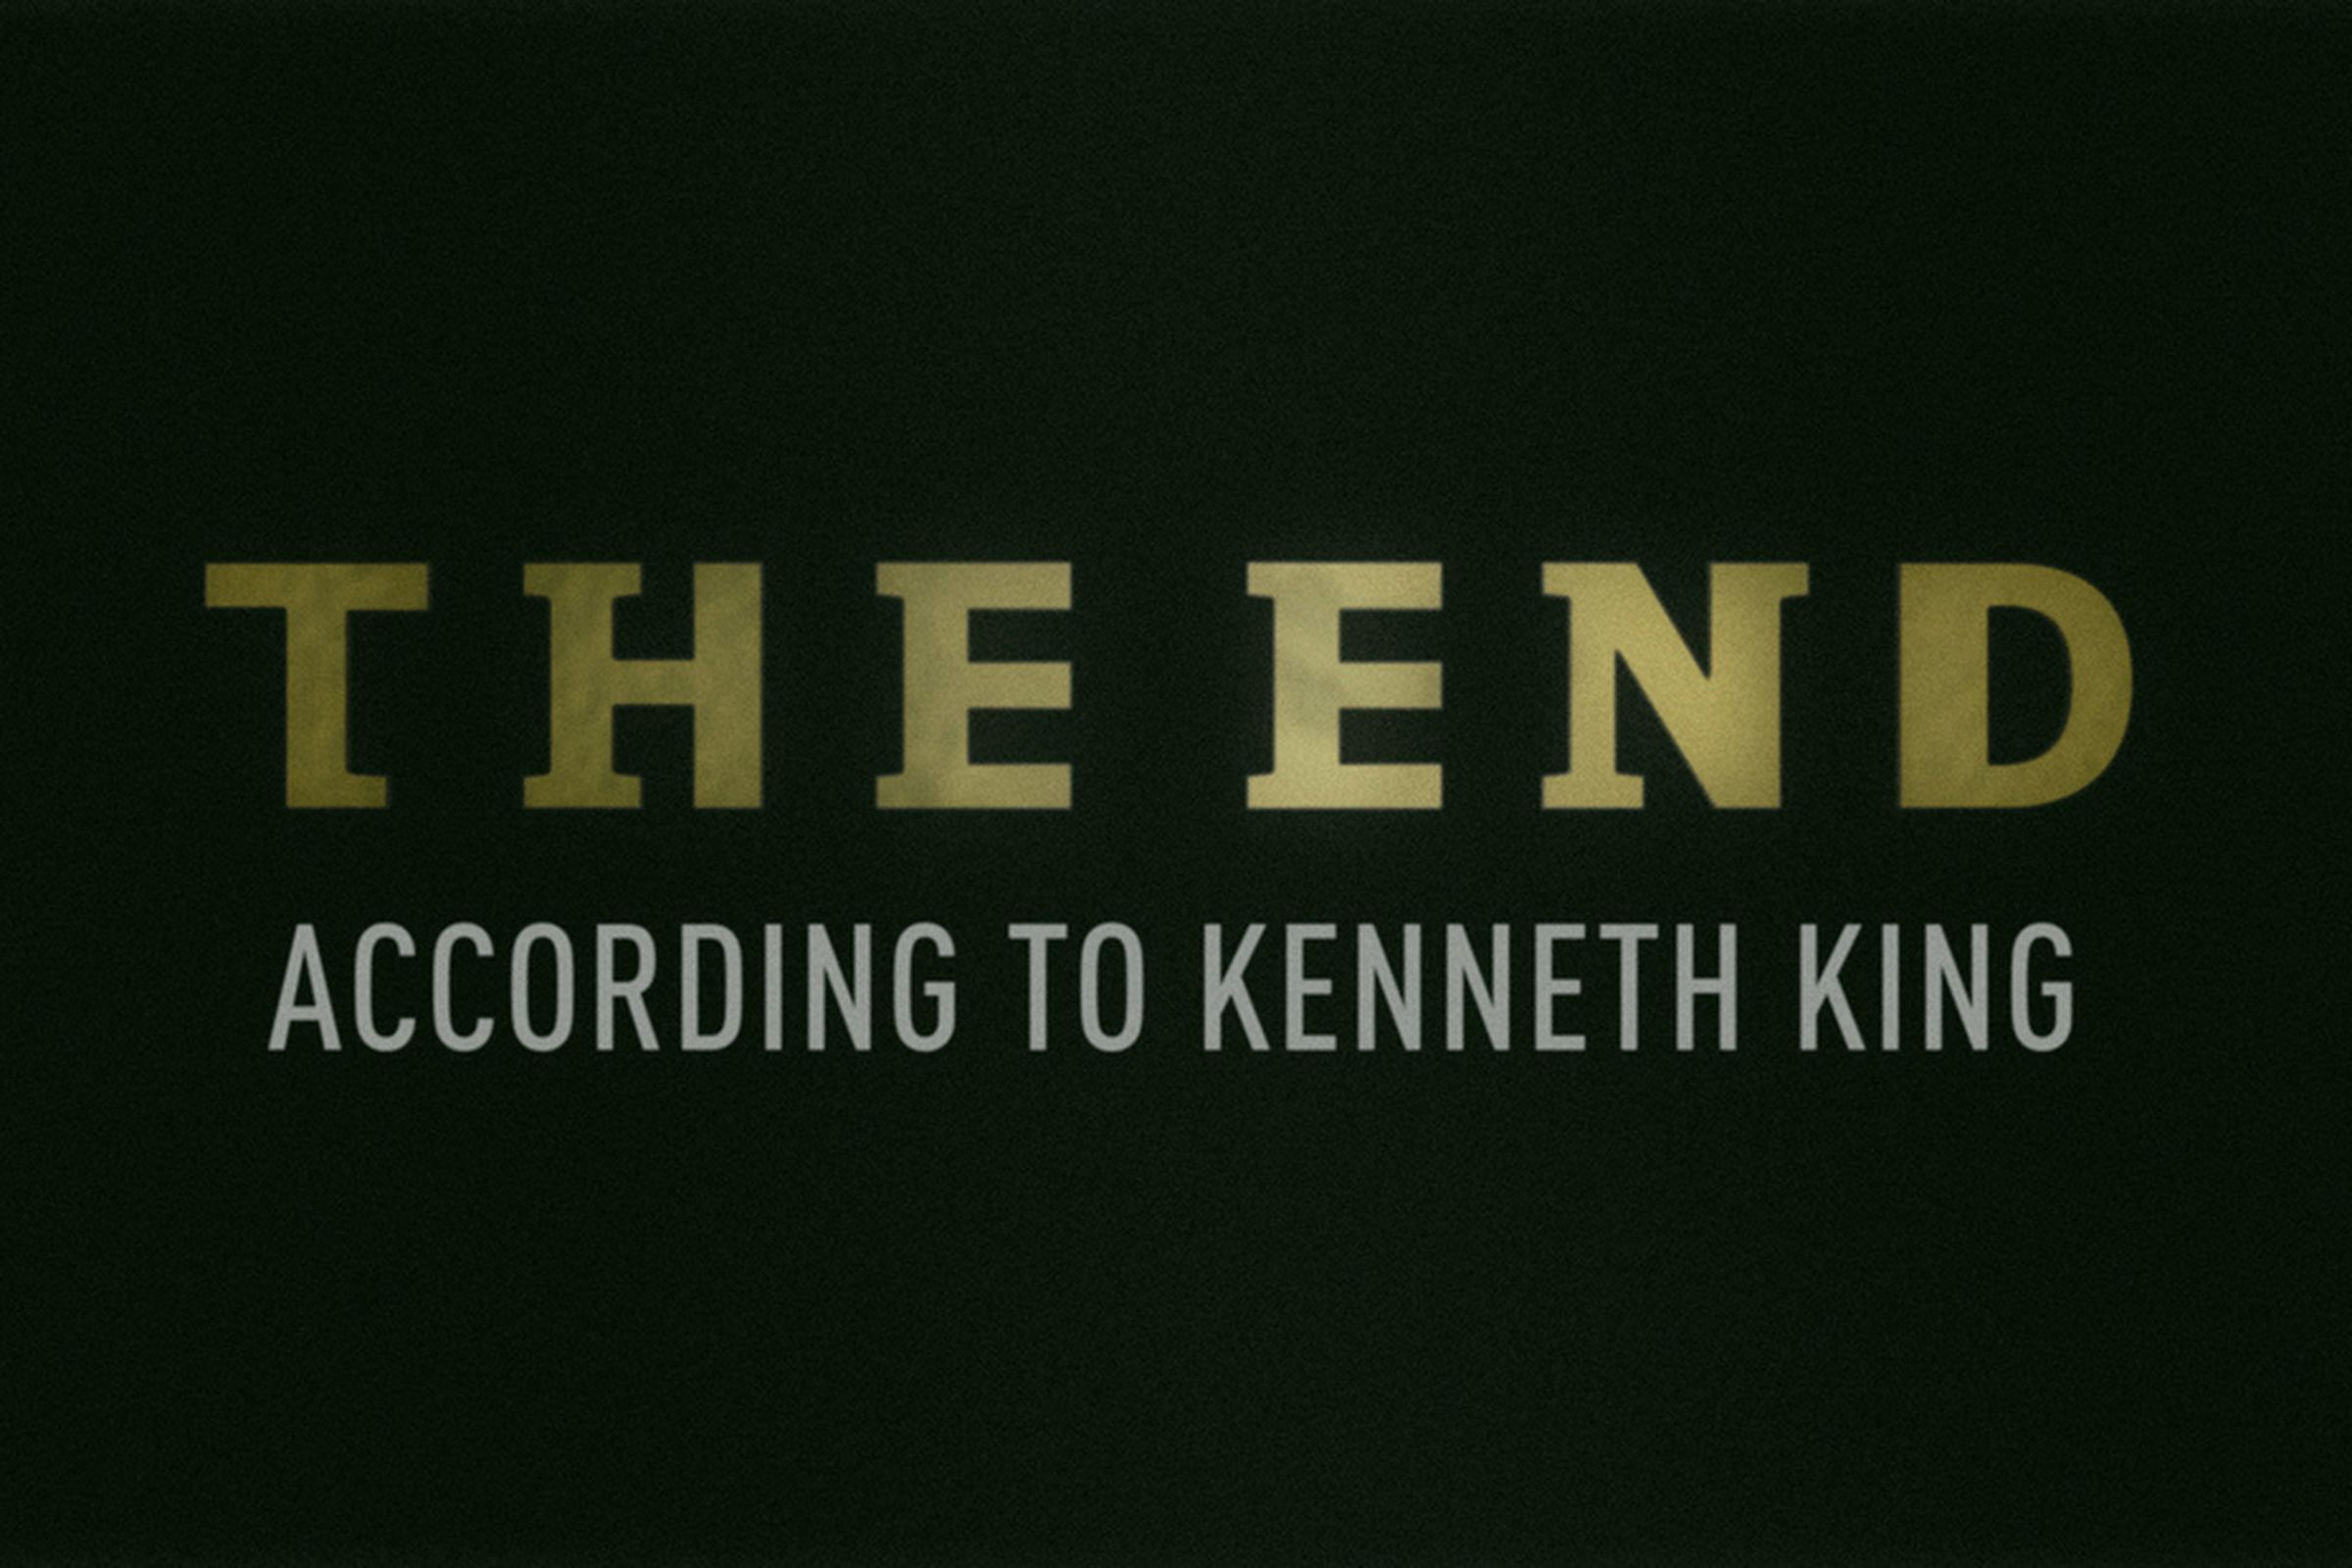 Kenneth King